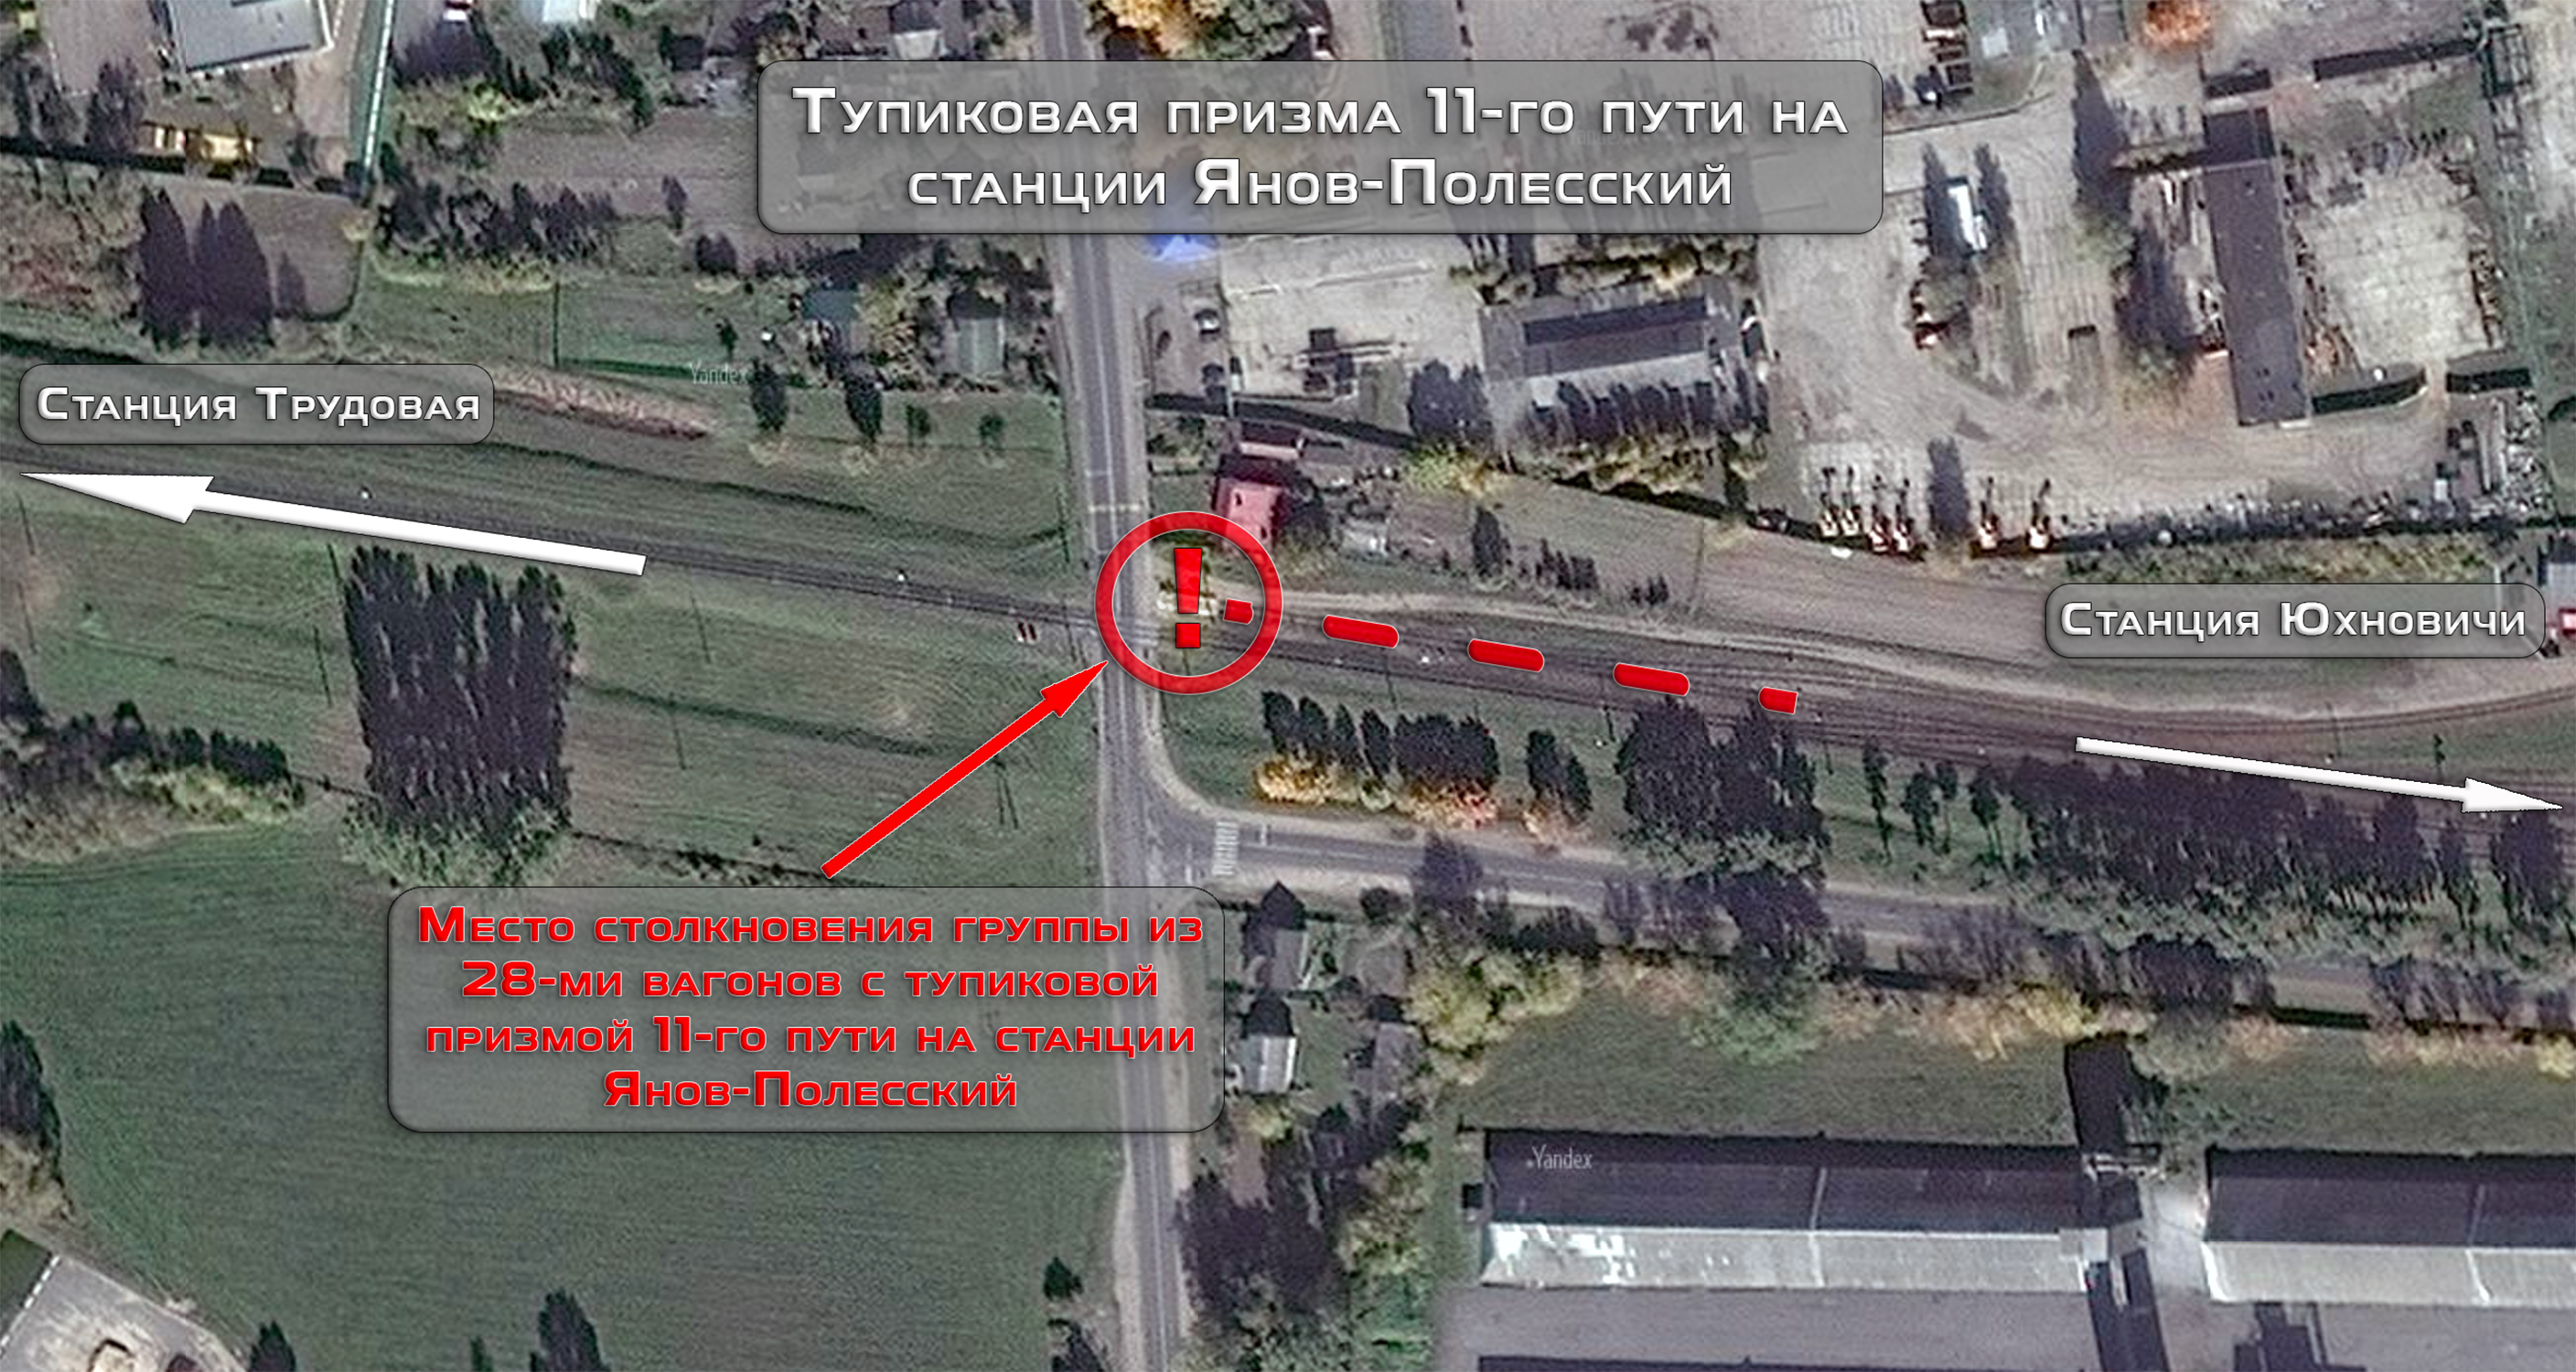 Место столкновения вагонов с тупиковой призмой на станции Янов-Полесский